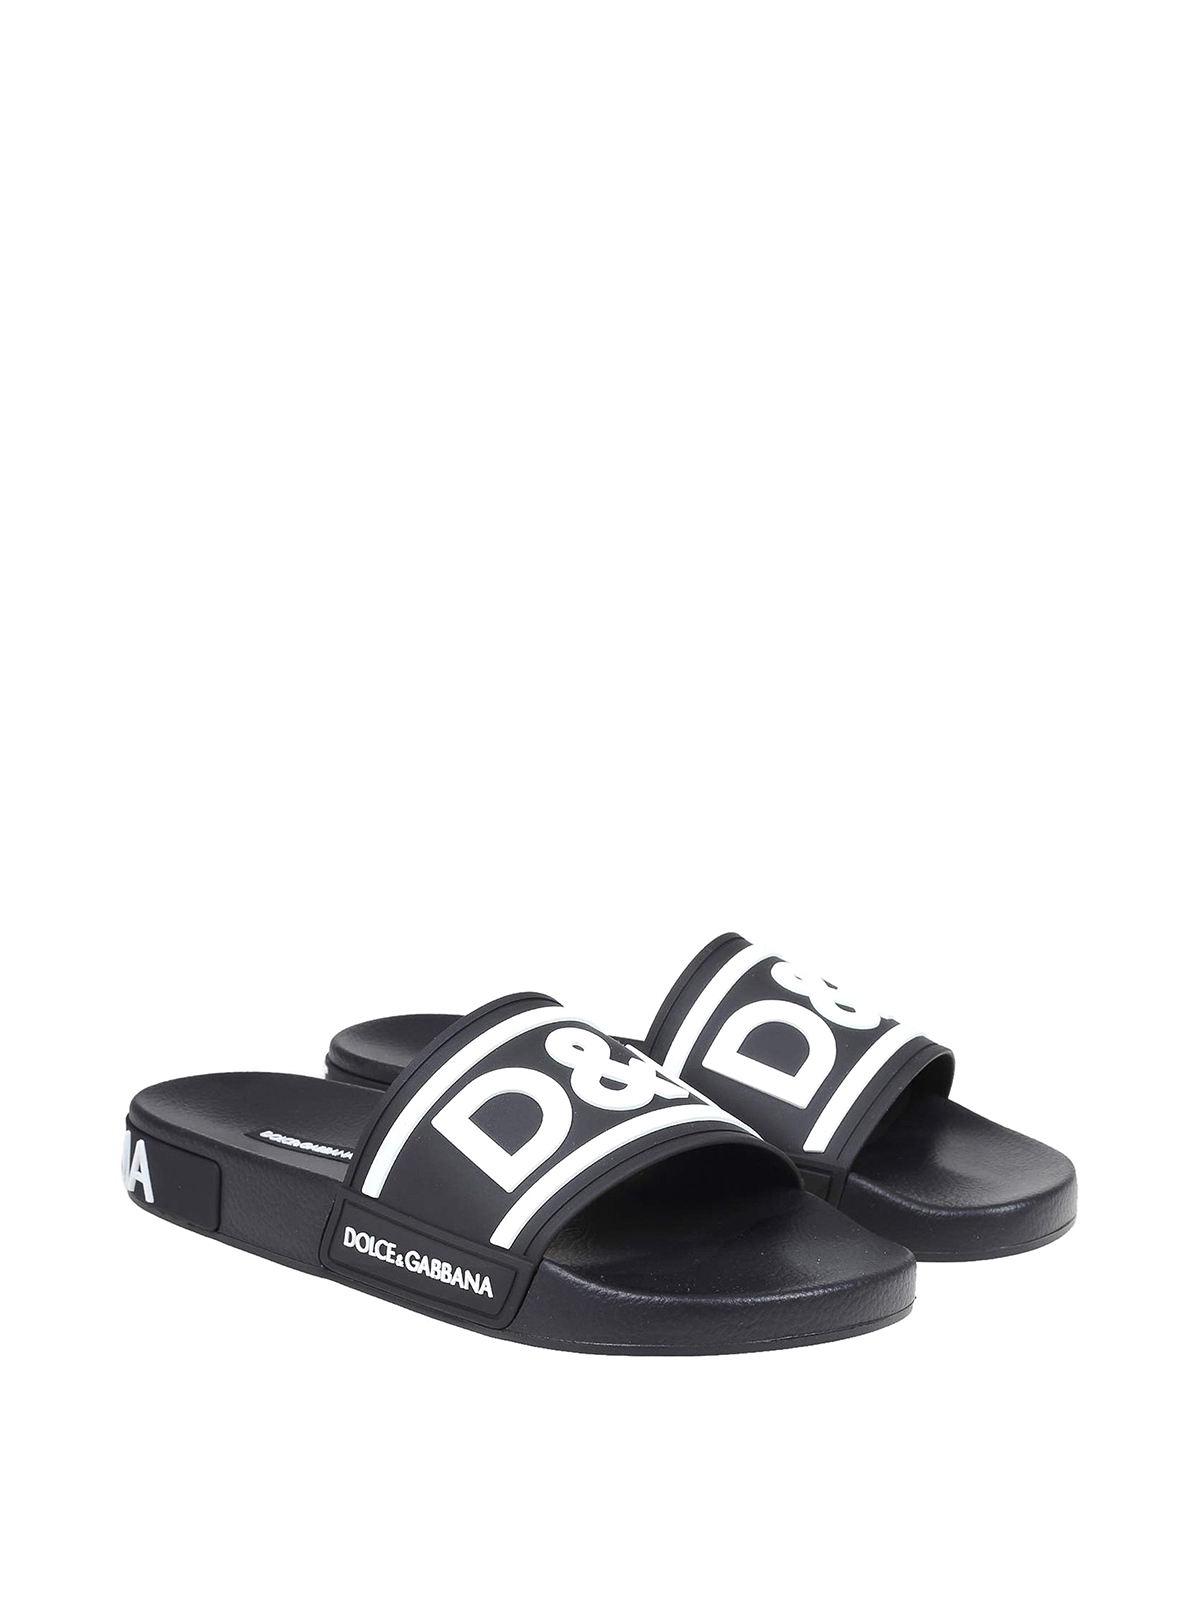 Flip flops Dolce & Gabbana - Rubber flip flops - CS1991AQ85889690